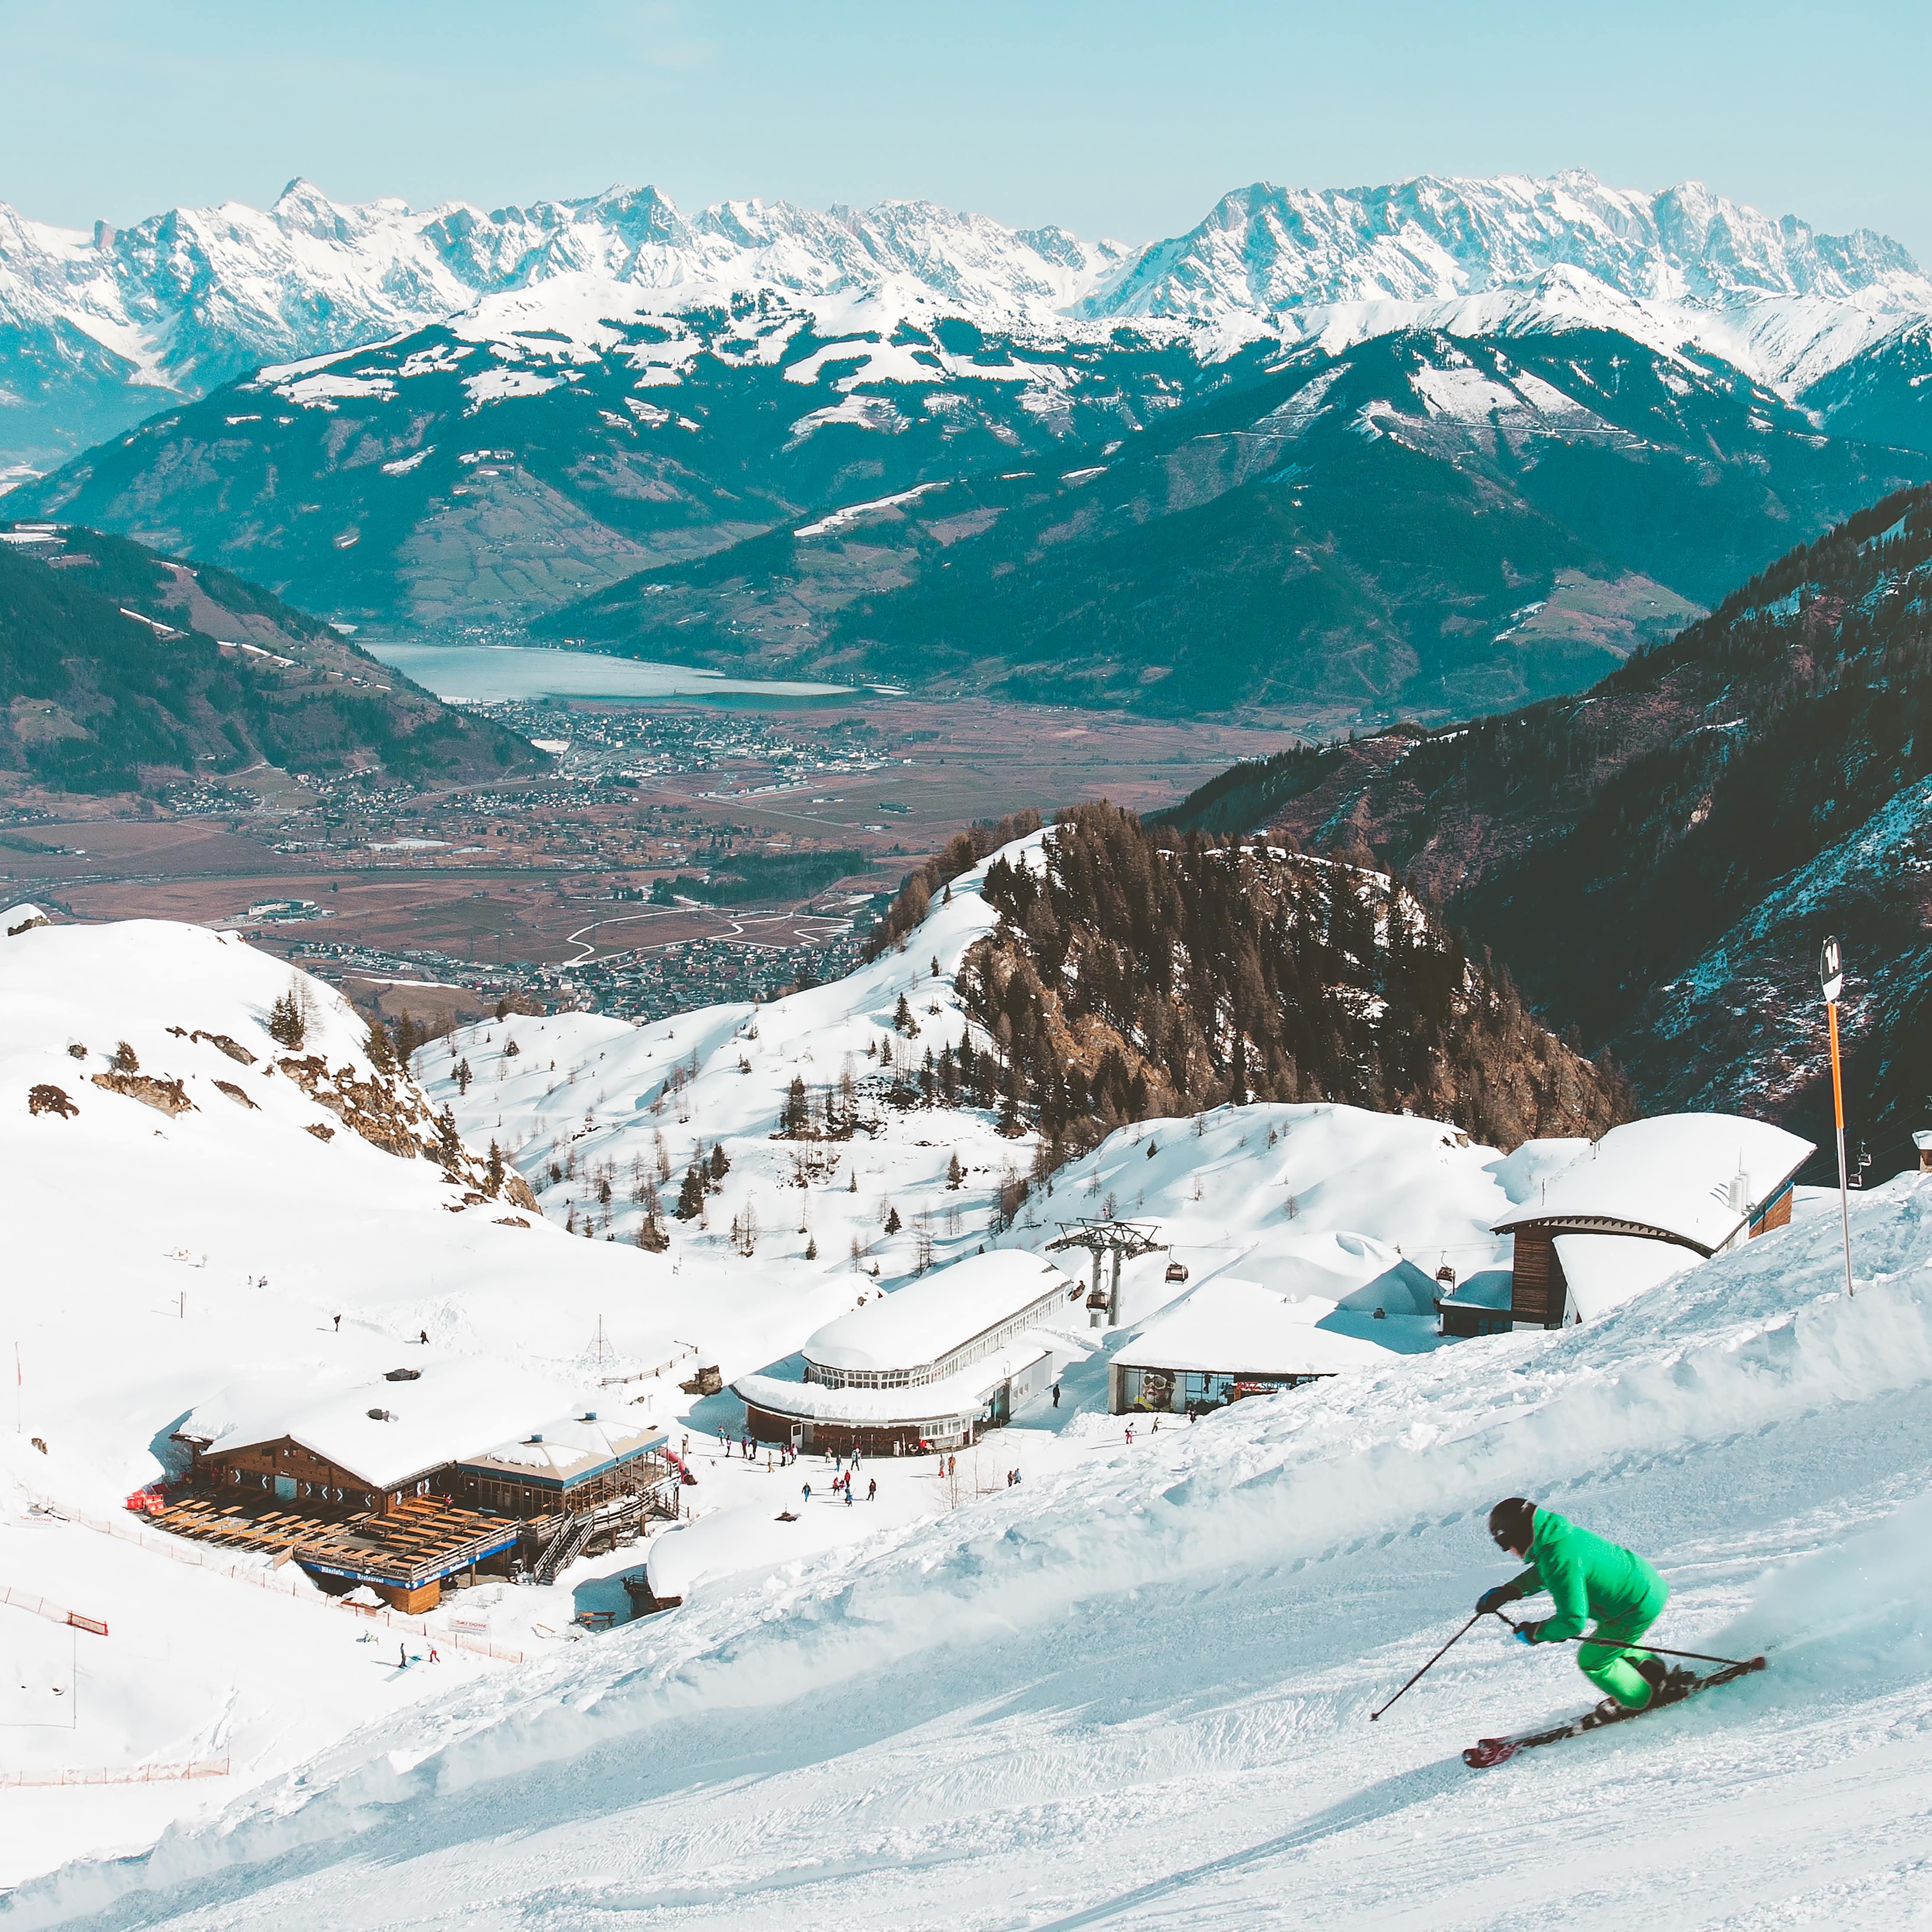 Station de ski au pied des pistes